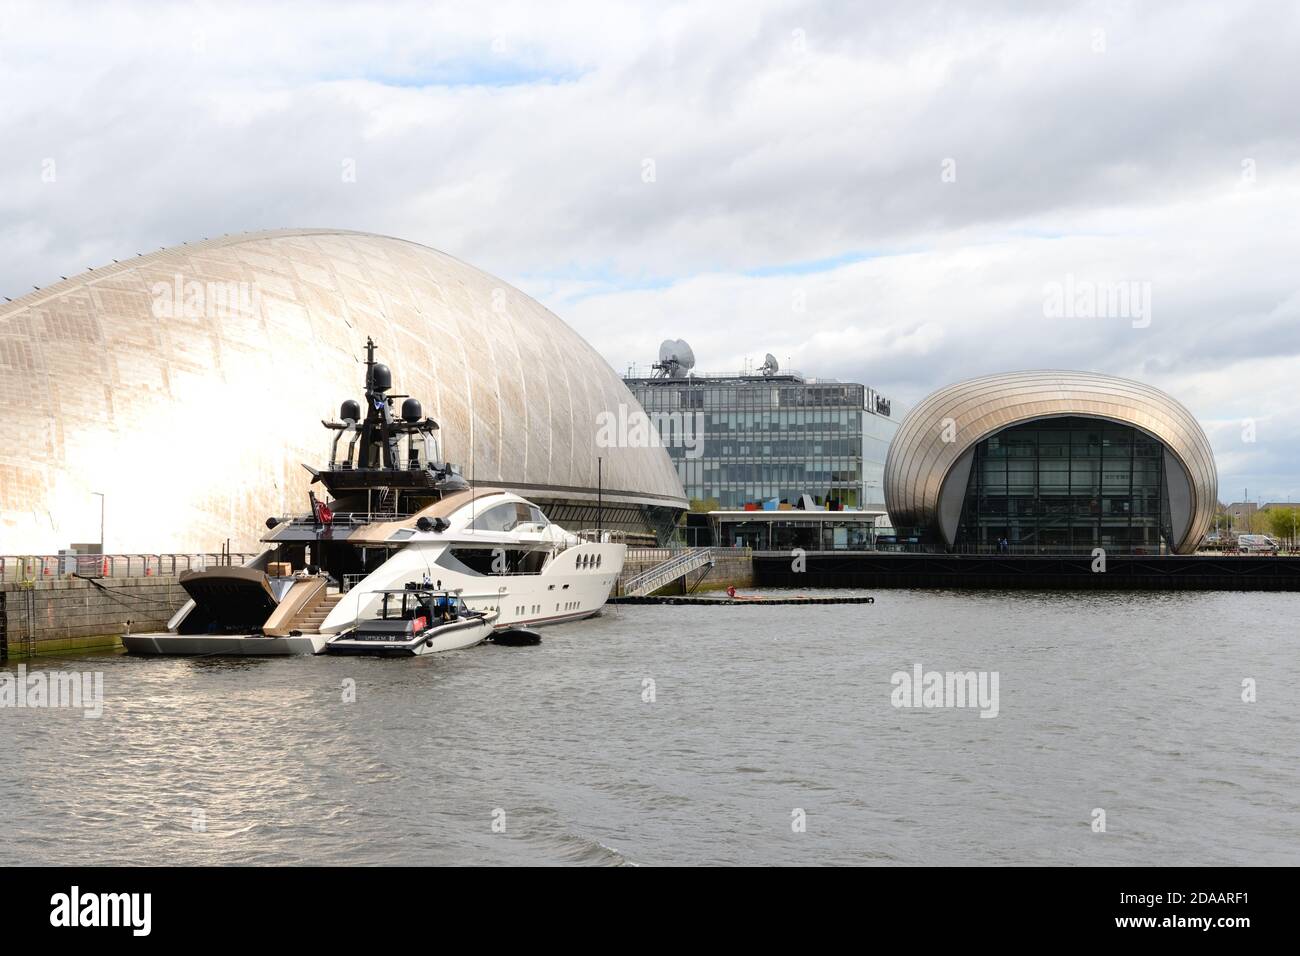 Le Super yacht Lady M a amarré à Cessnock Quay, le long du centre scientifique de Glasgow et du cinéma IMAX Cineworld, North Quay, Glasgow, Écosse, Royaume-Uni,Europe Banque D'Images